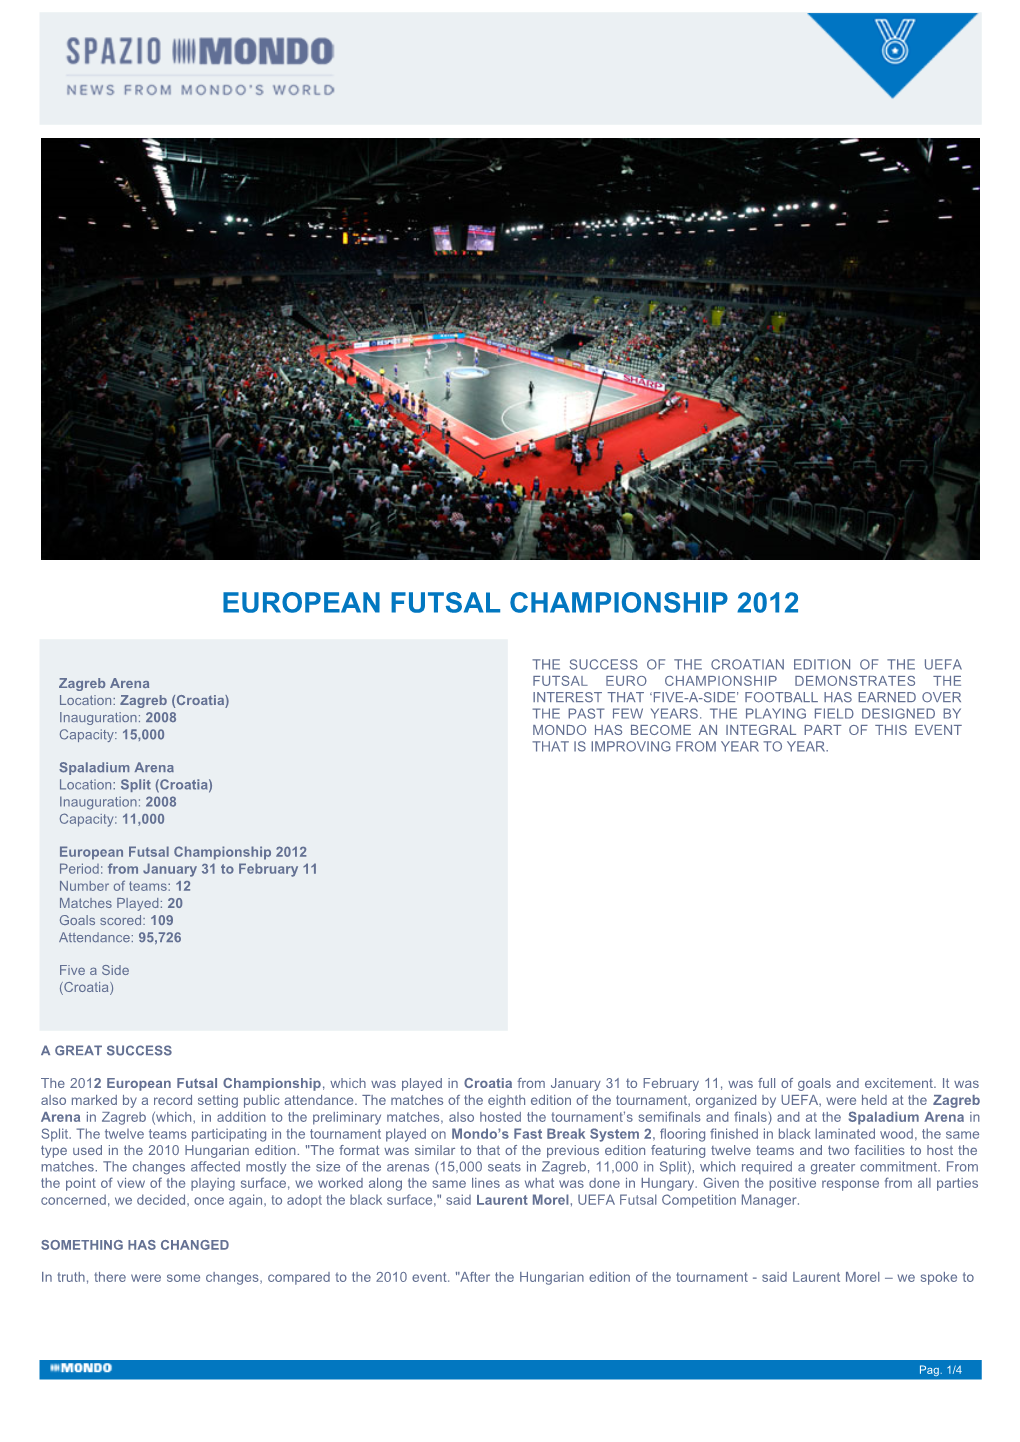 European Futsal Championship 2012